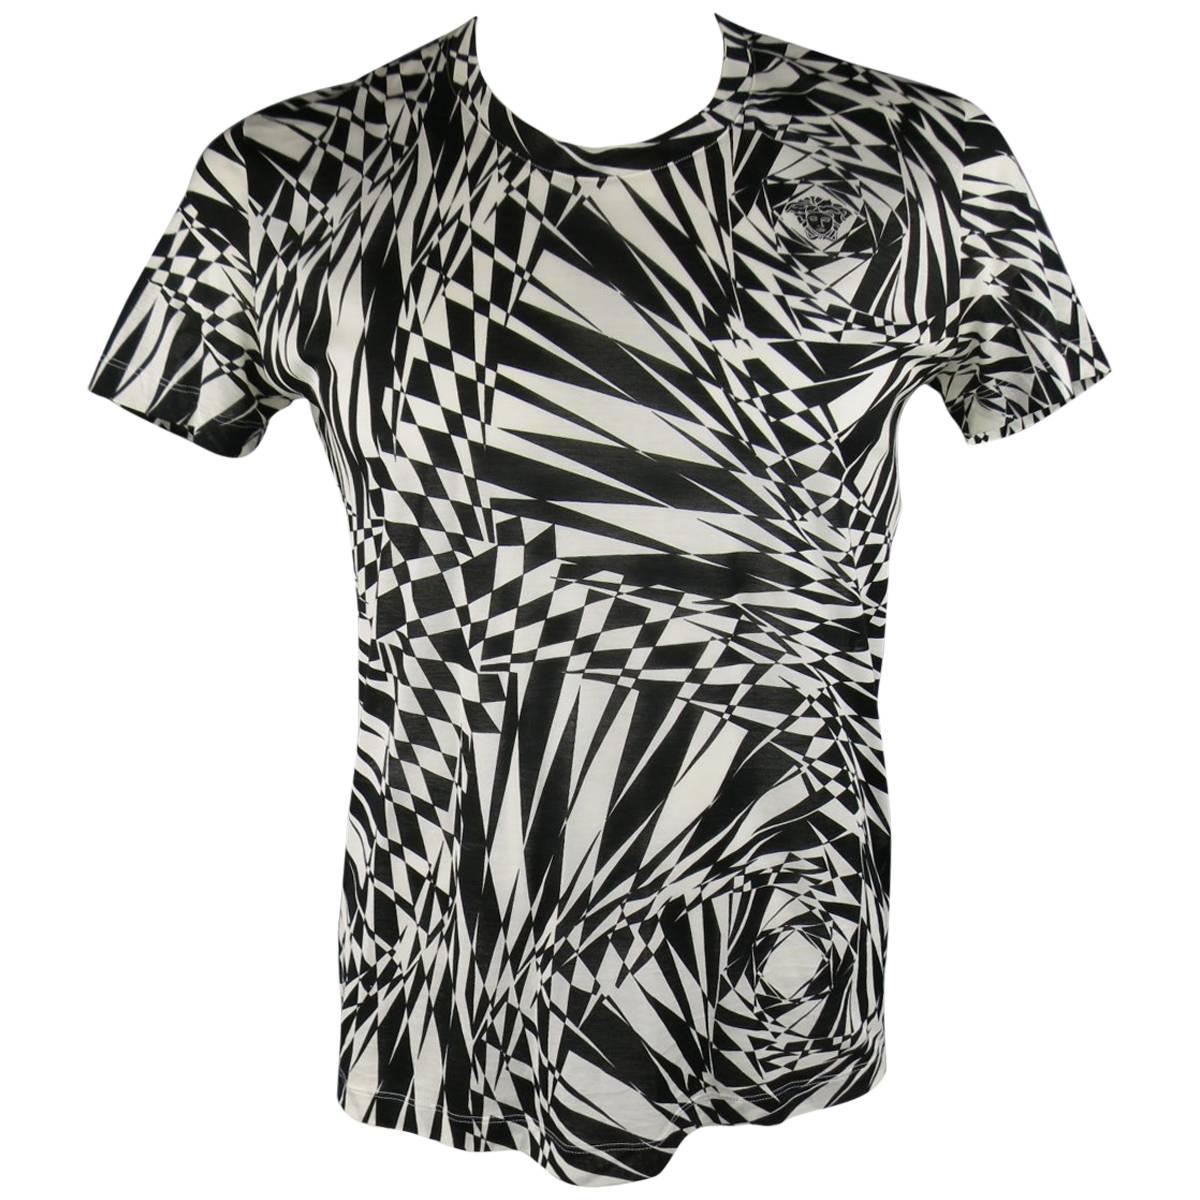 VERSACE Size L Black & White Geometric Medusa Print Sheer Cotton T-shirt